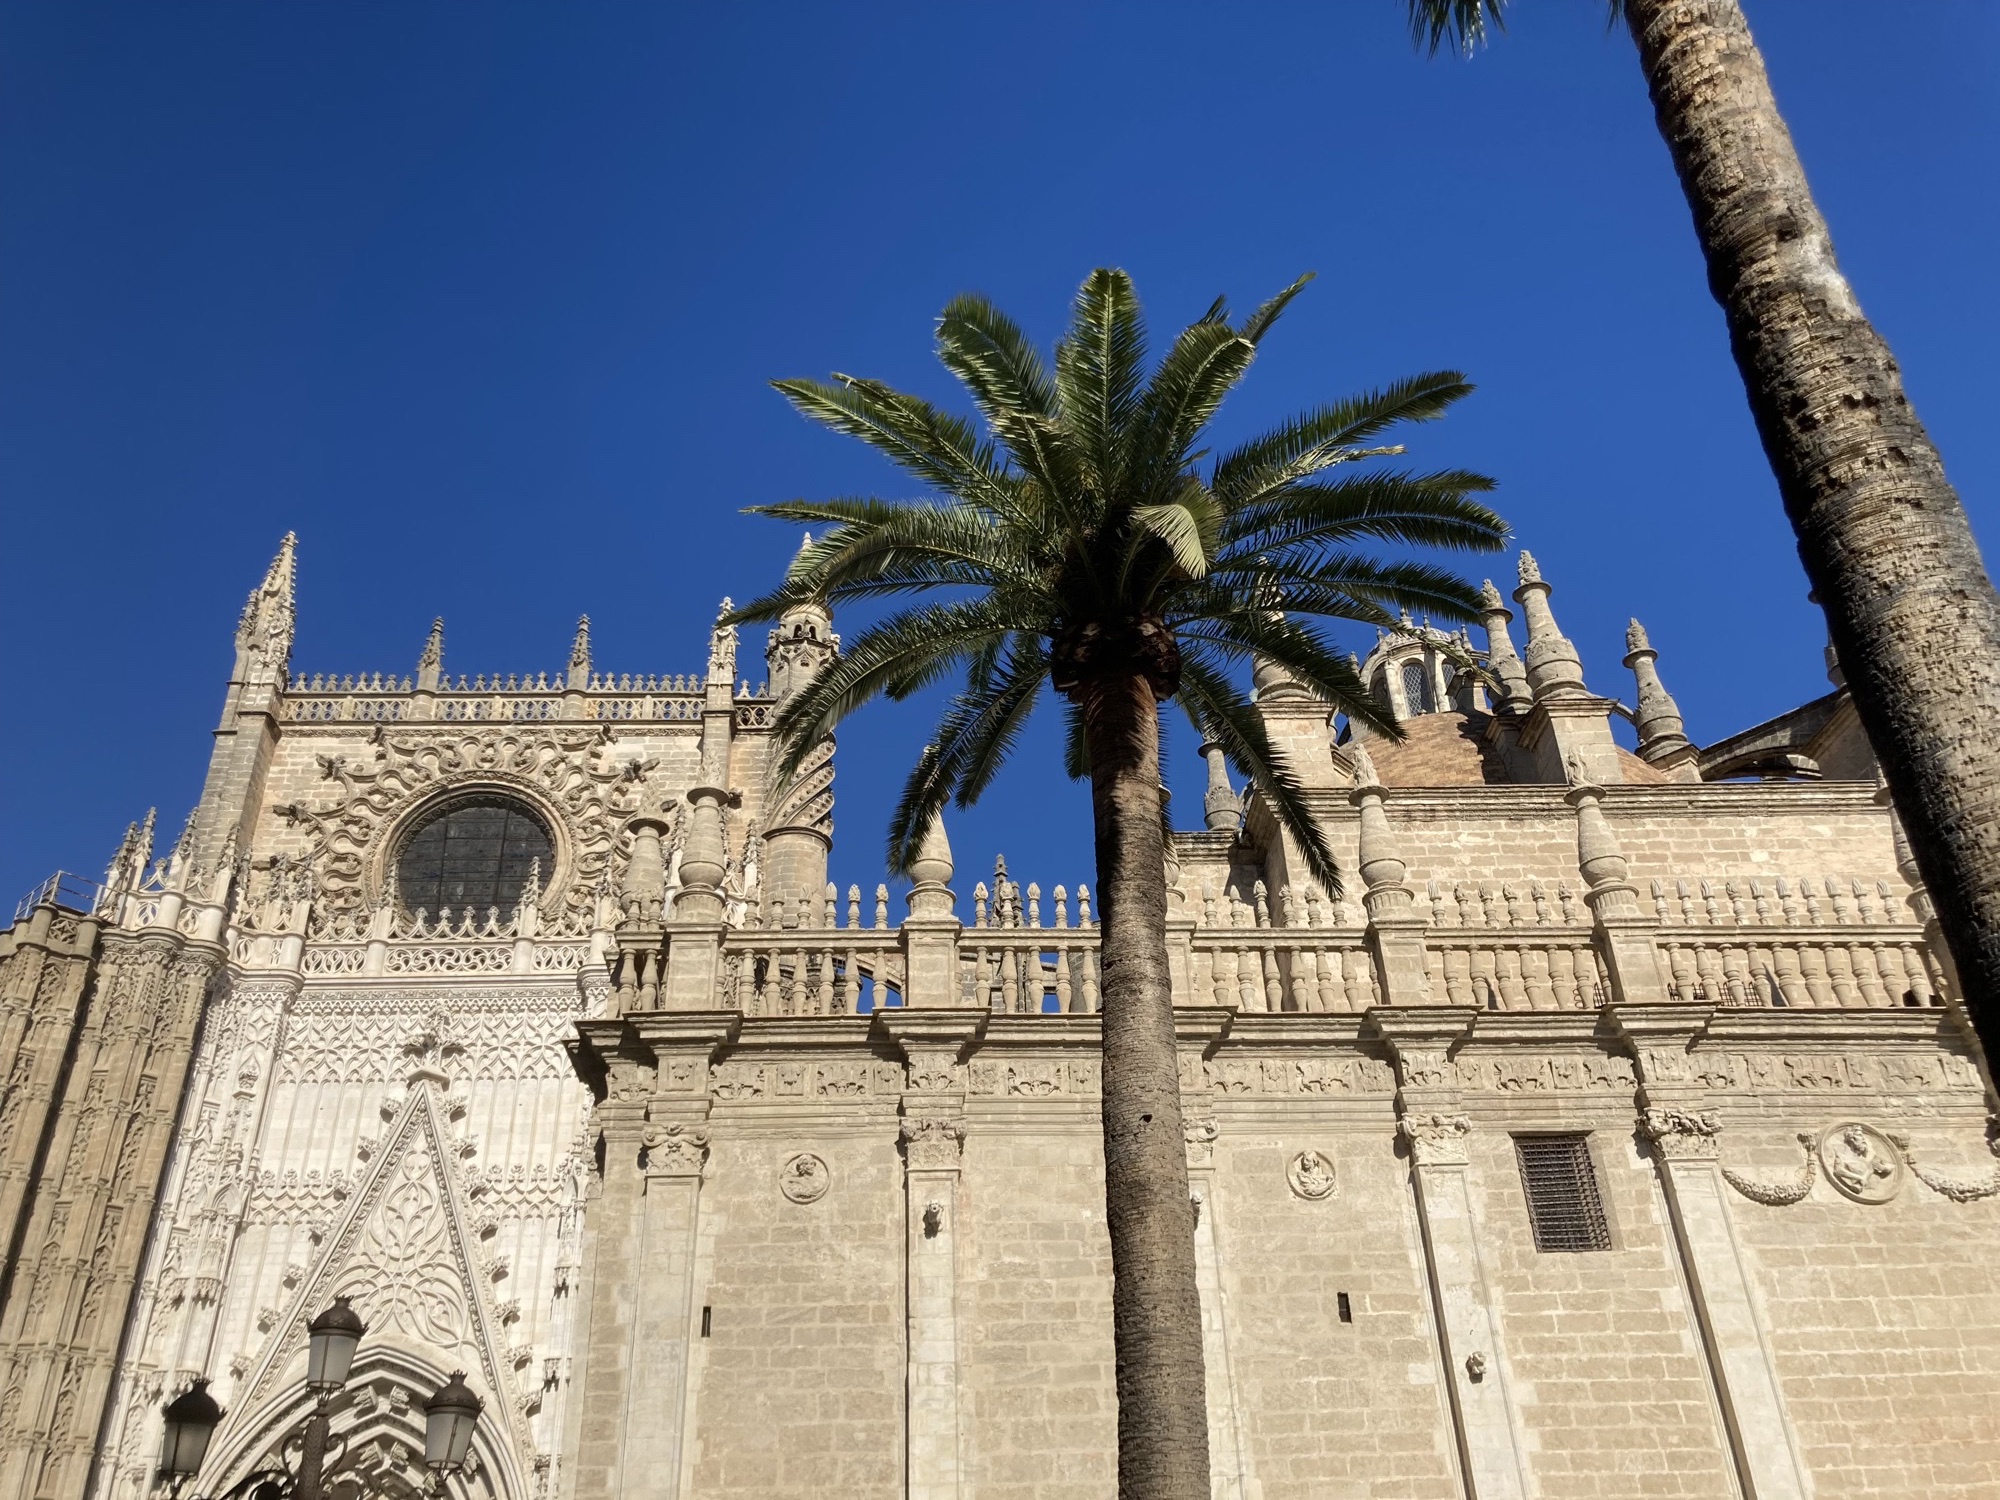 Kathedrale von Sevilla, links das Portal des Haupteingangs, reichlich verzierter Spitzbogen über dem Eingangstor, darüber ein rundes Glasfenster, das rundherum wie eine Sonne verziert ist, im Bild vor der Kathedrale die Krone einer Palme